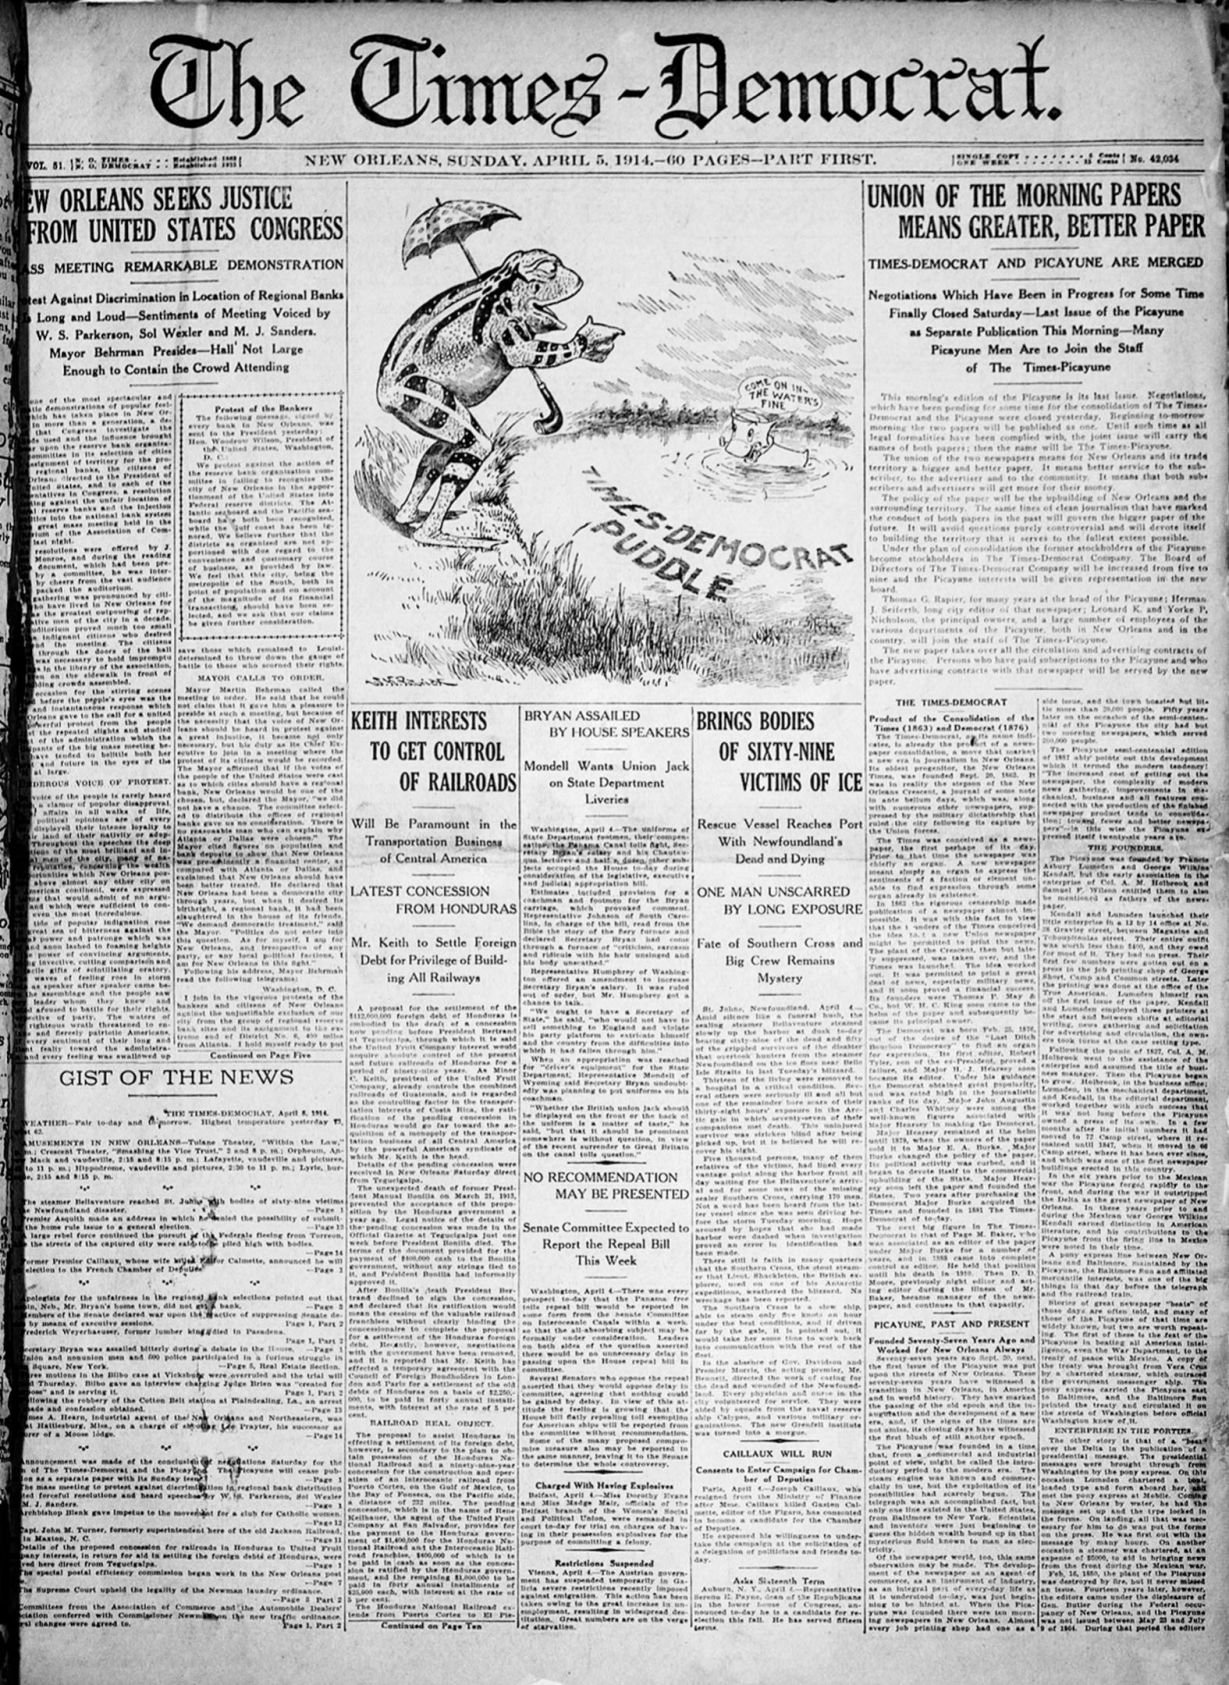 03 Times-Democrat newspaper 1914.pdf